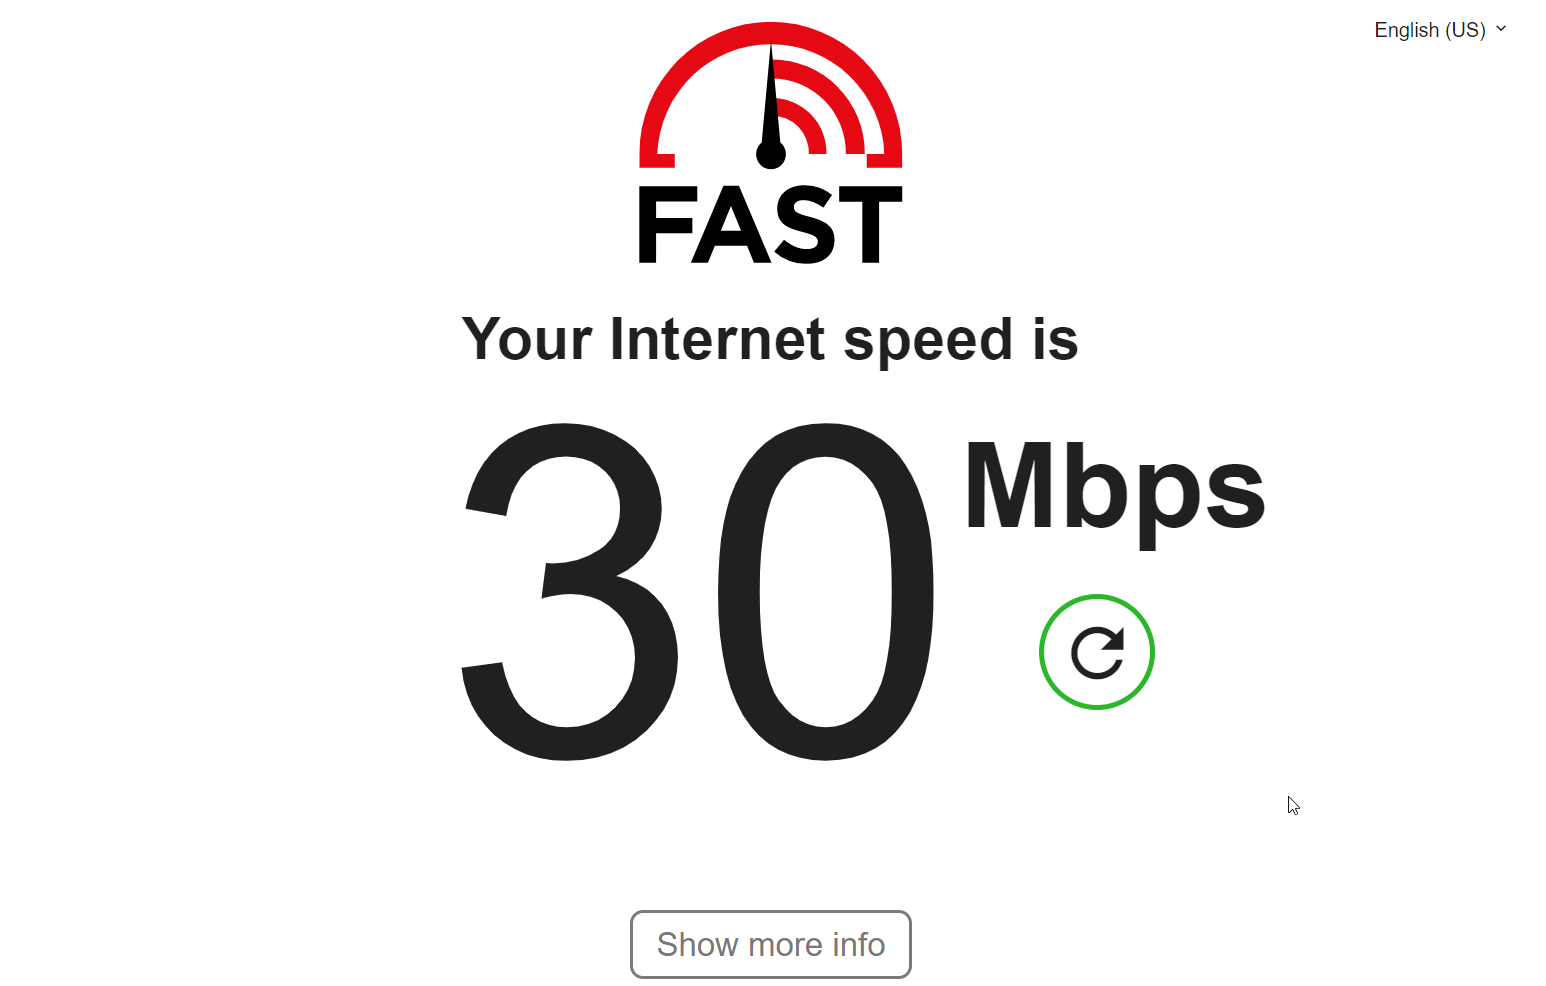 test my speed internet